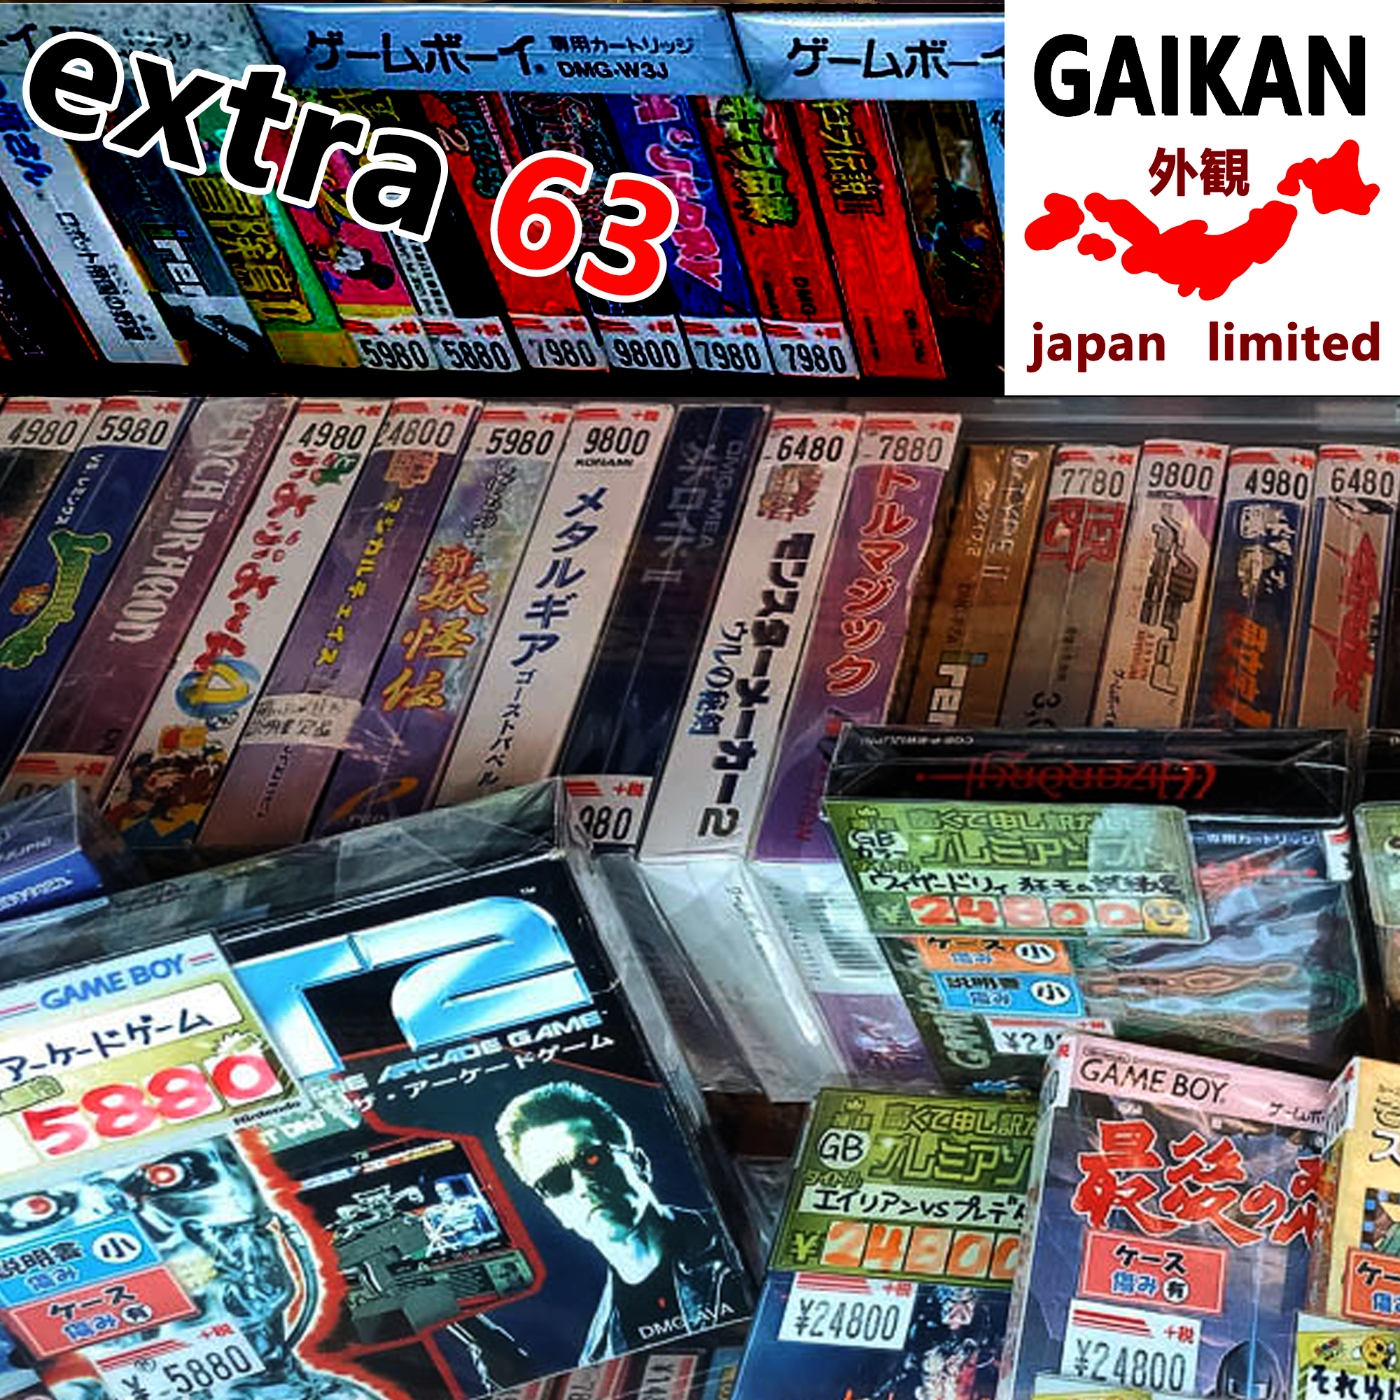 Extra 63 - Cómo y dónde comprar videojuegos retro en Japón - Retrogaming Hunt revealed (parte 2) - Episodio exclusivo para mecenas